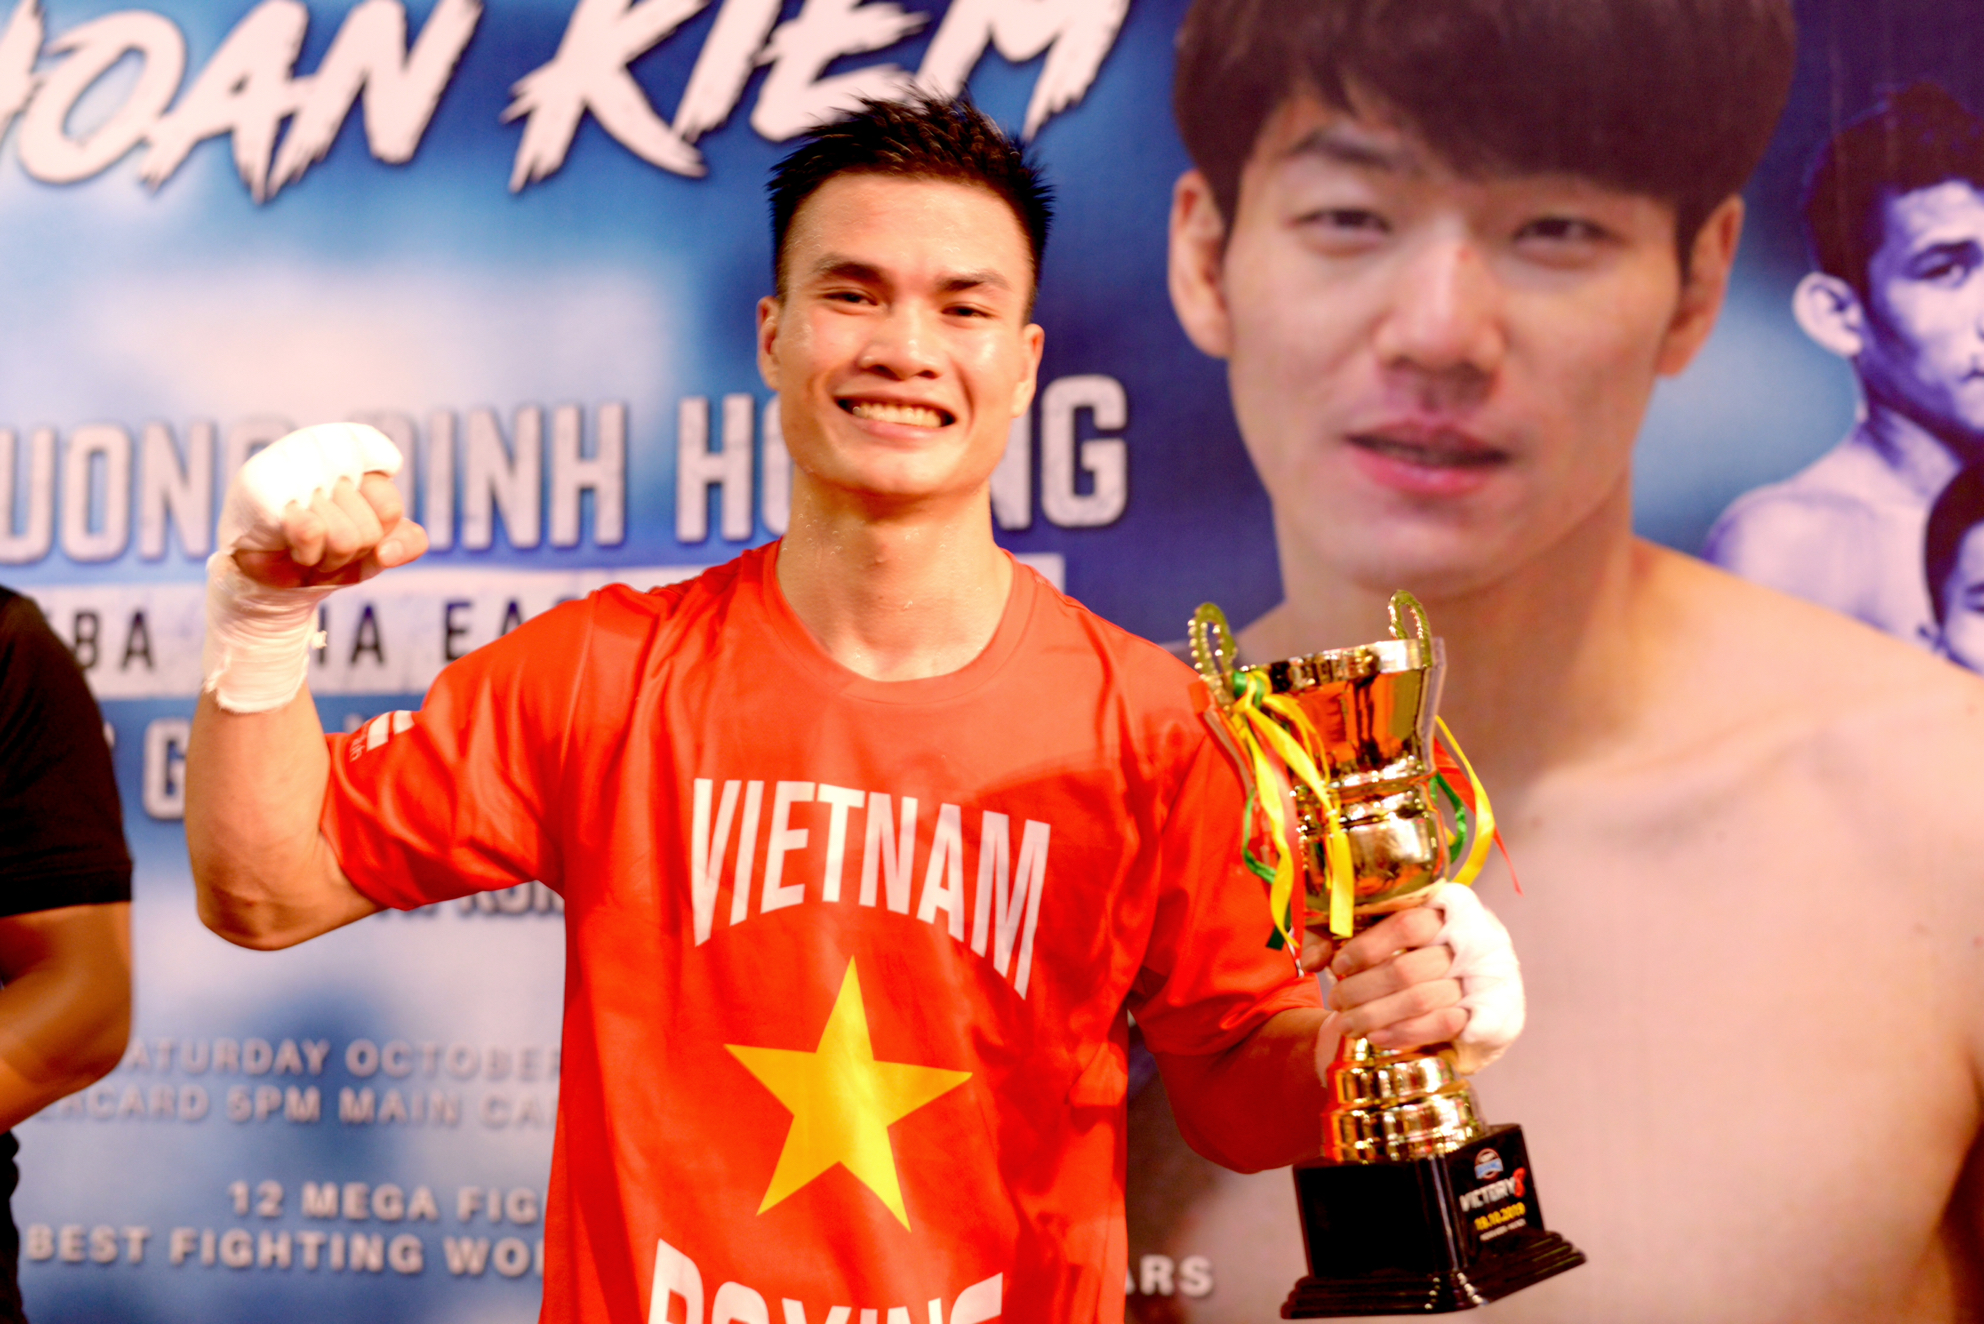 Boxer Nguyen Van Duong of Vietnam at the Victory 8 event last October in Hanoi. (Photo courtesy of Nguyen Van Duong)